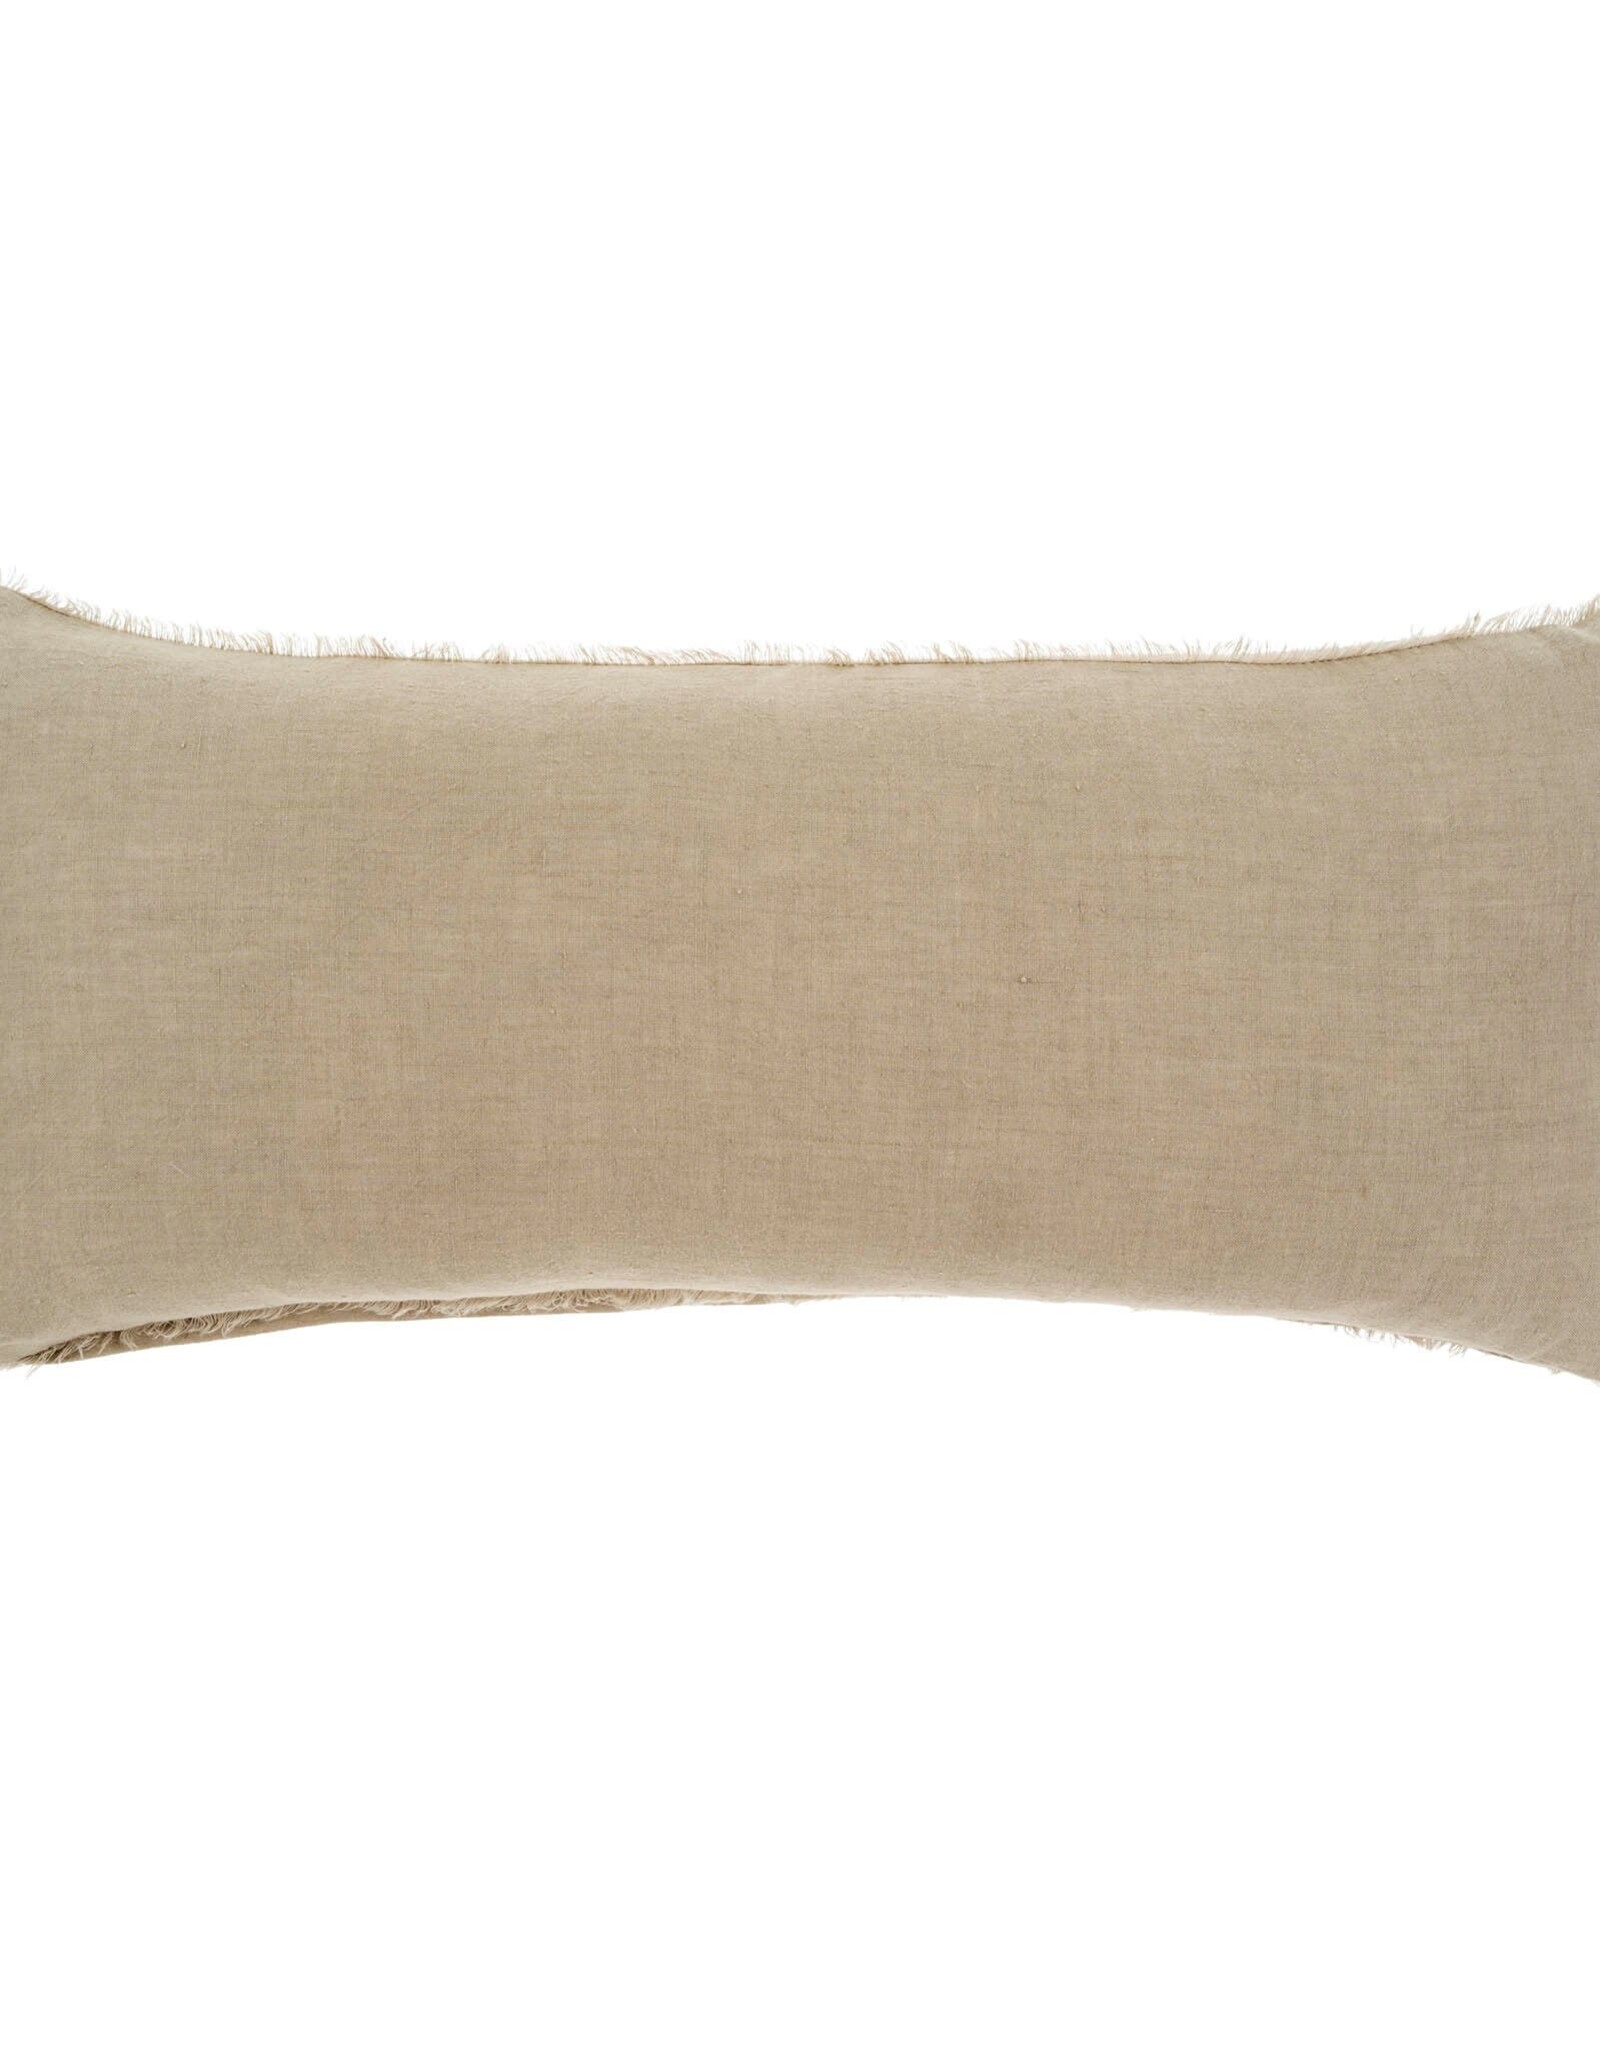 Lina Linen Pillow Driftwood 14x31